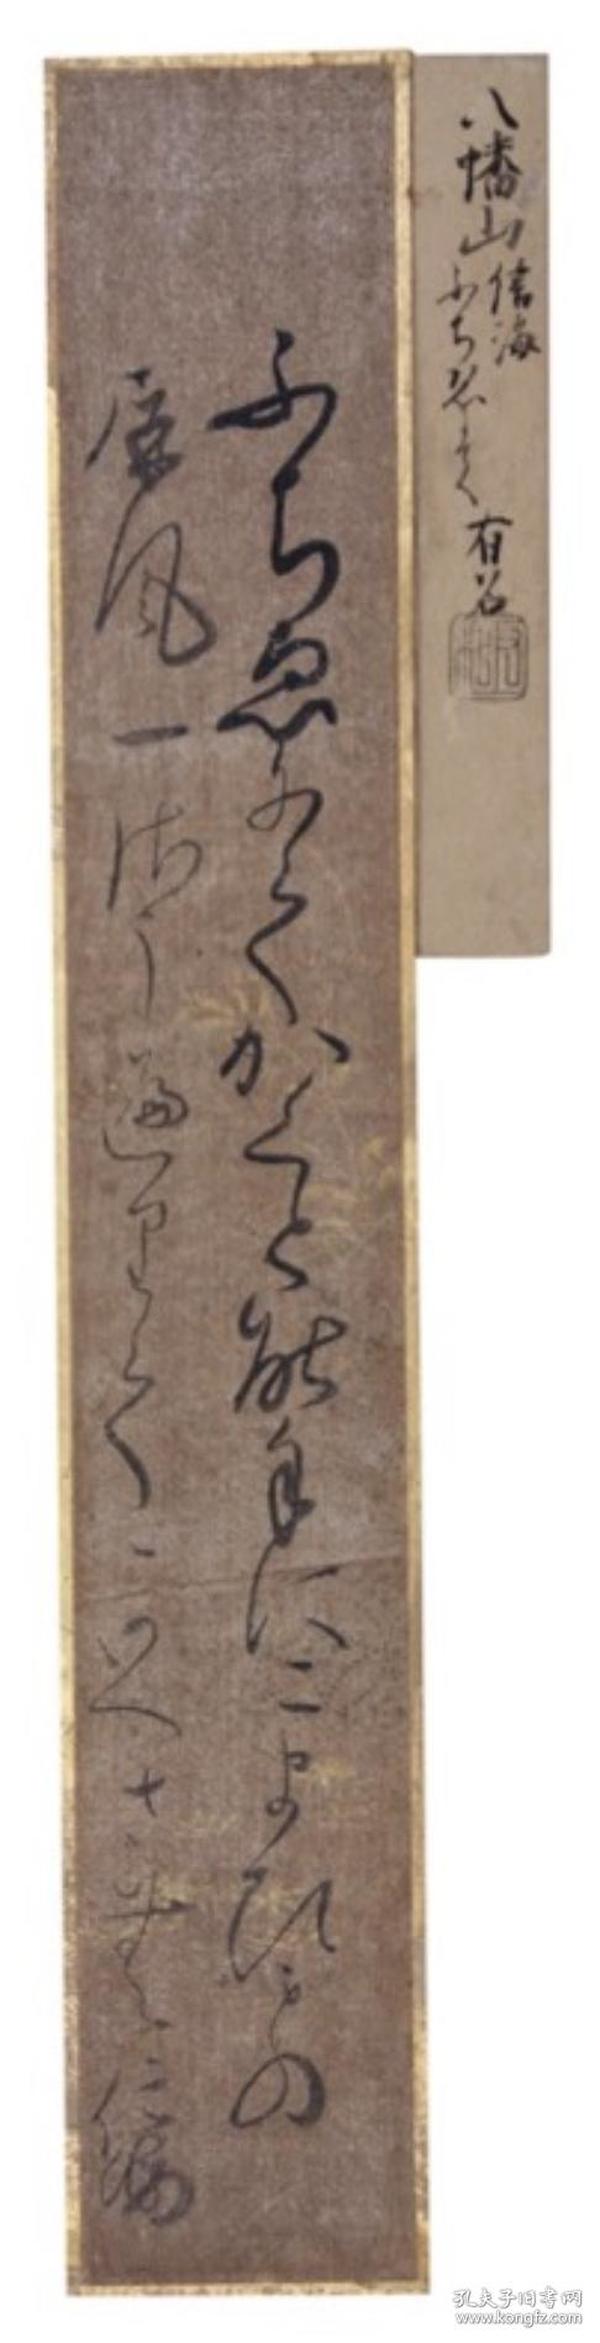 【墨迹】 古短冊 豊蔵坊信海（1626～1688年） 亲笔